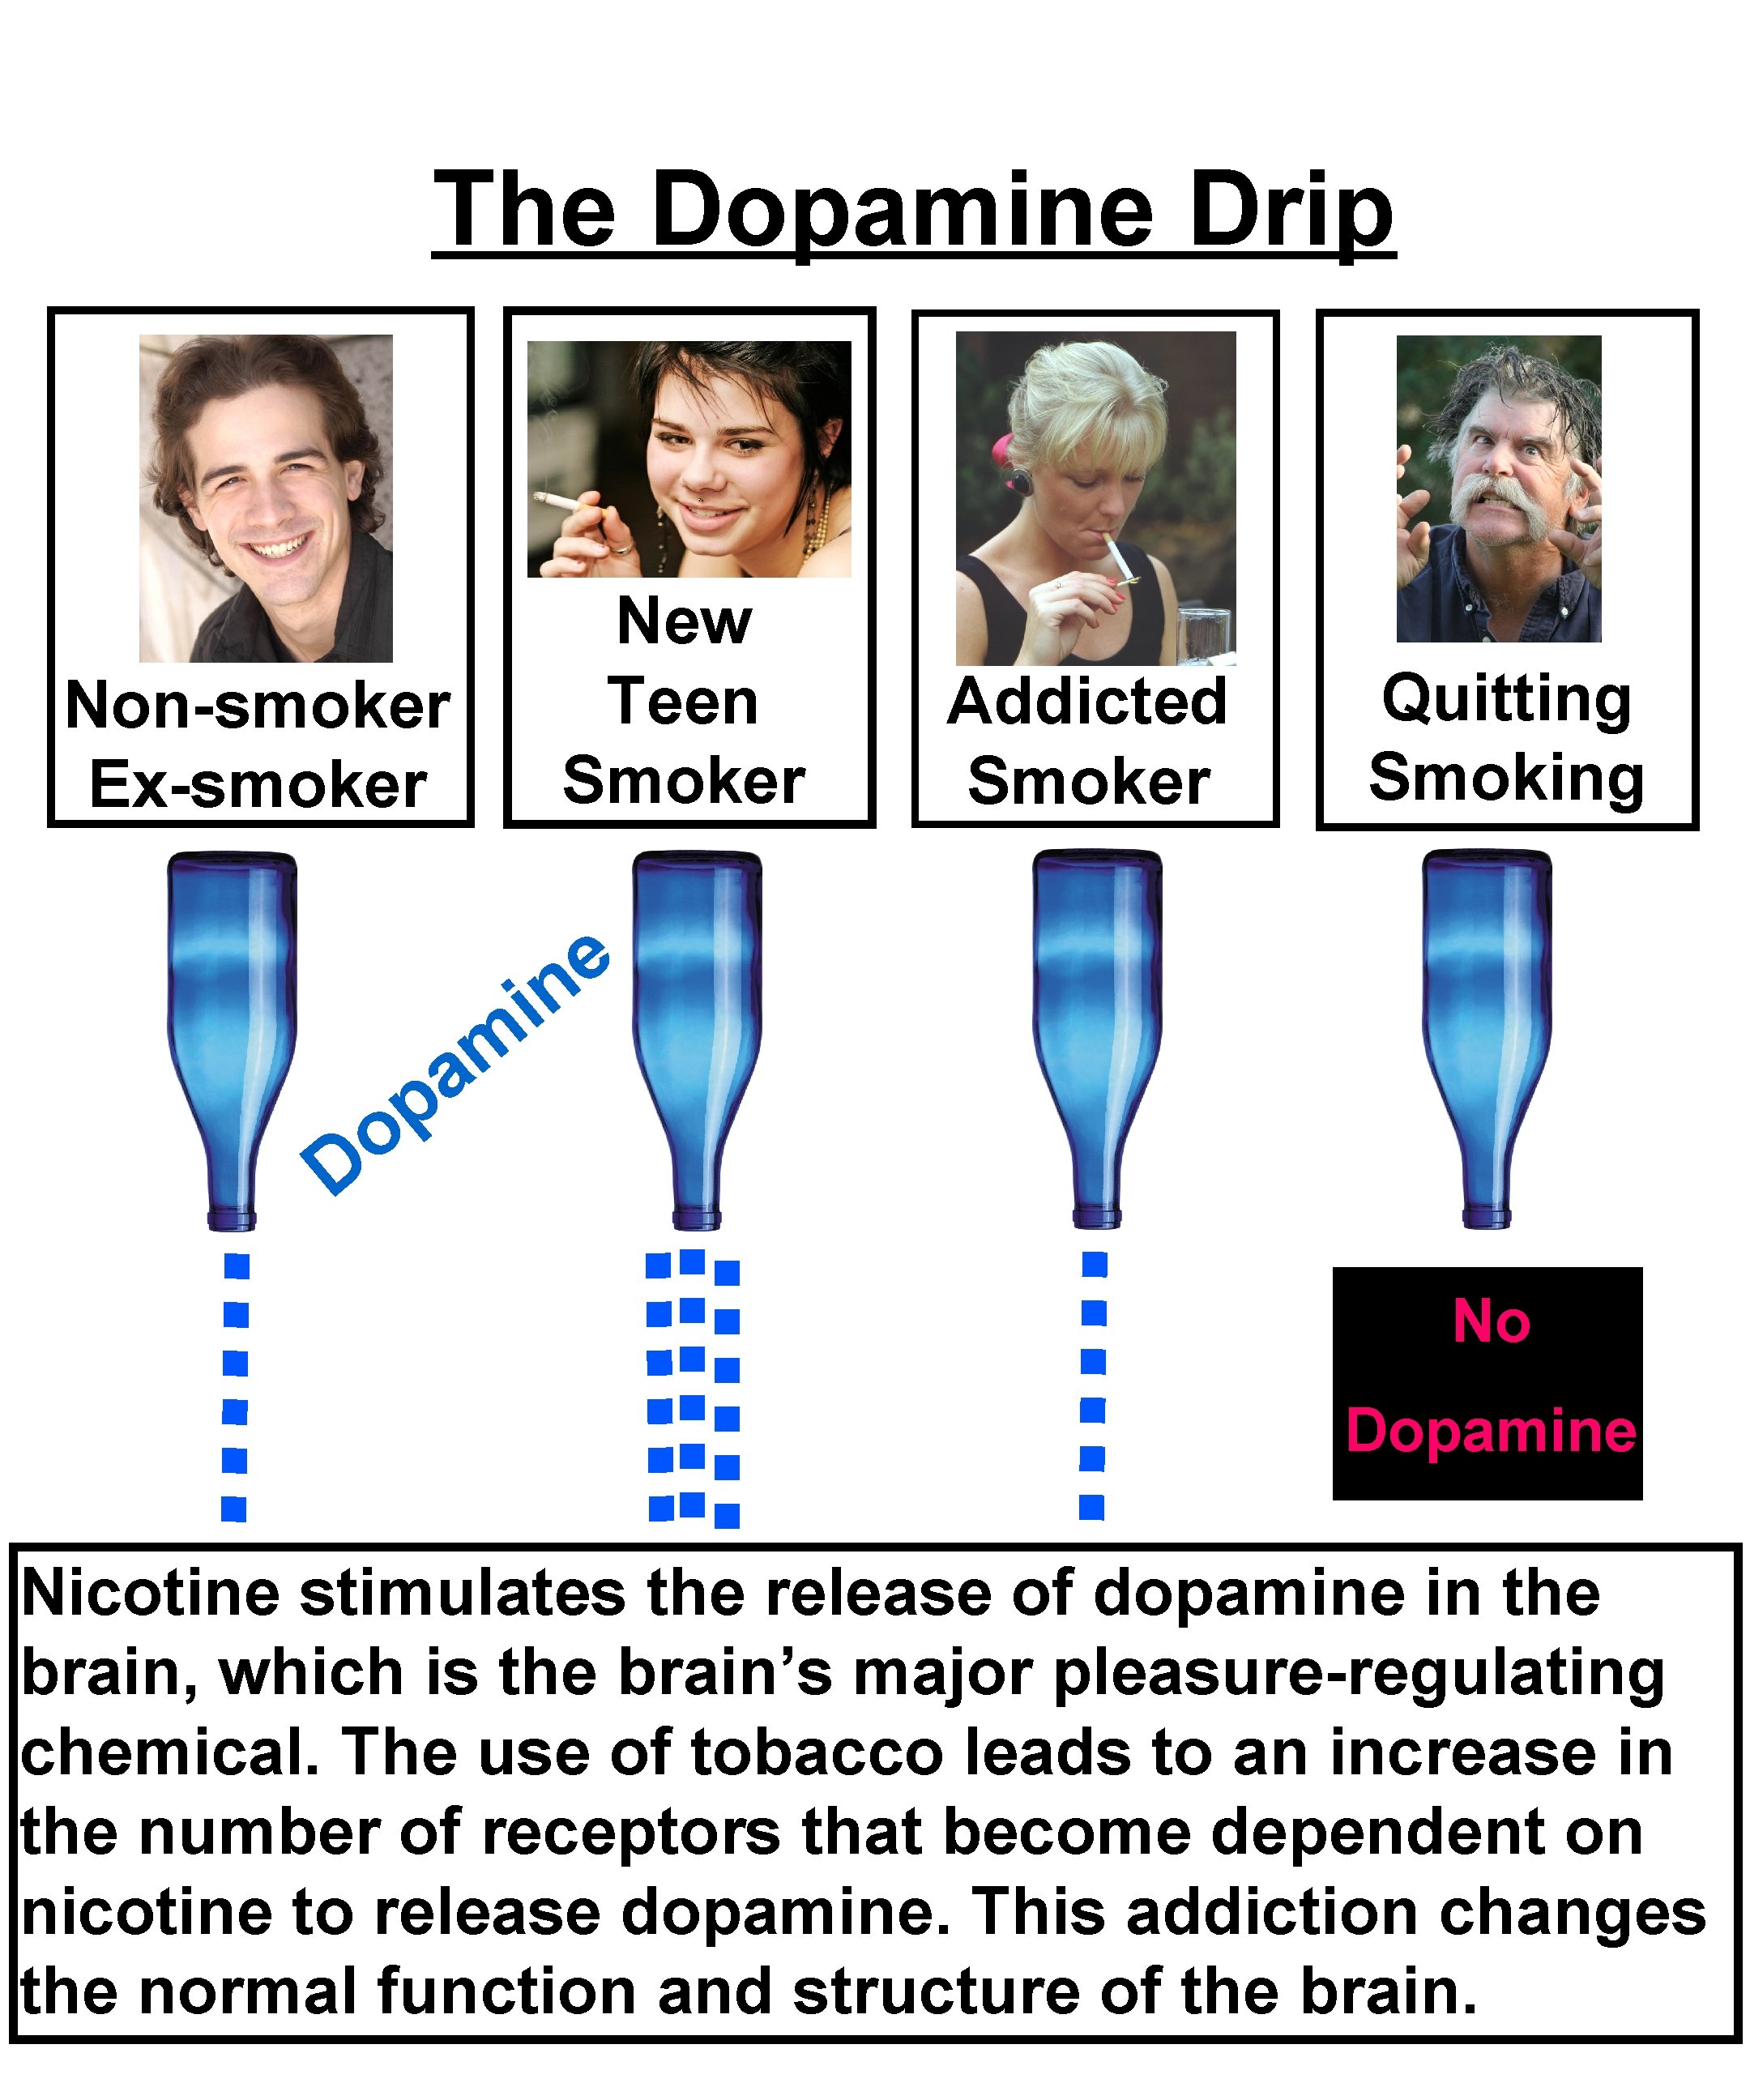 The Dopamine Drip Non-smoker Ex-smoker New Teen Smoker Addicted Smoker Quitting Smoking e n